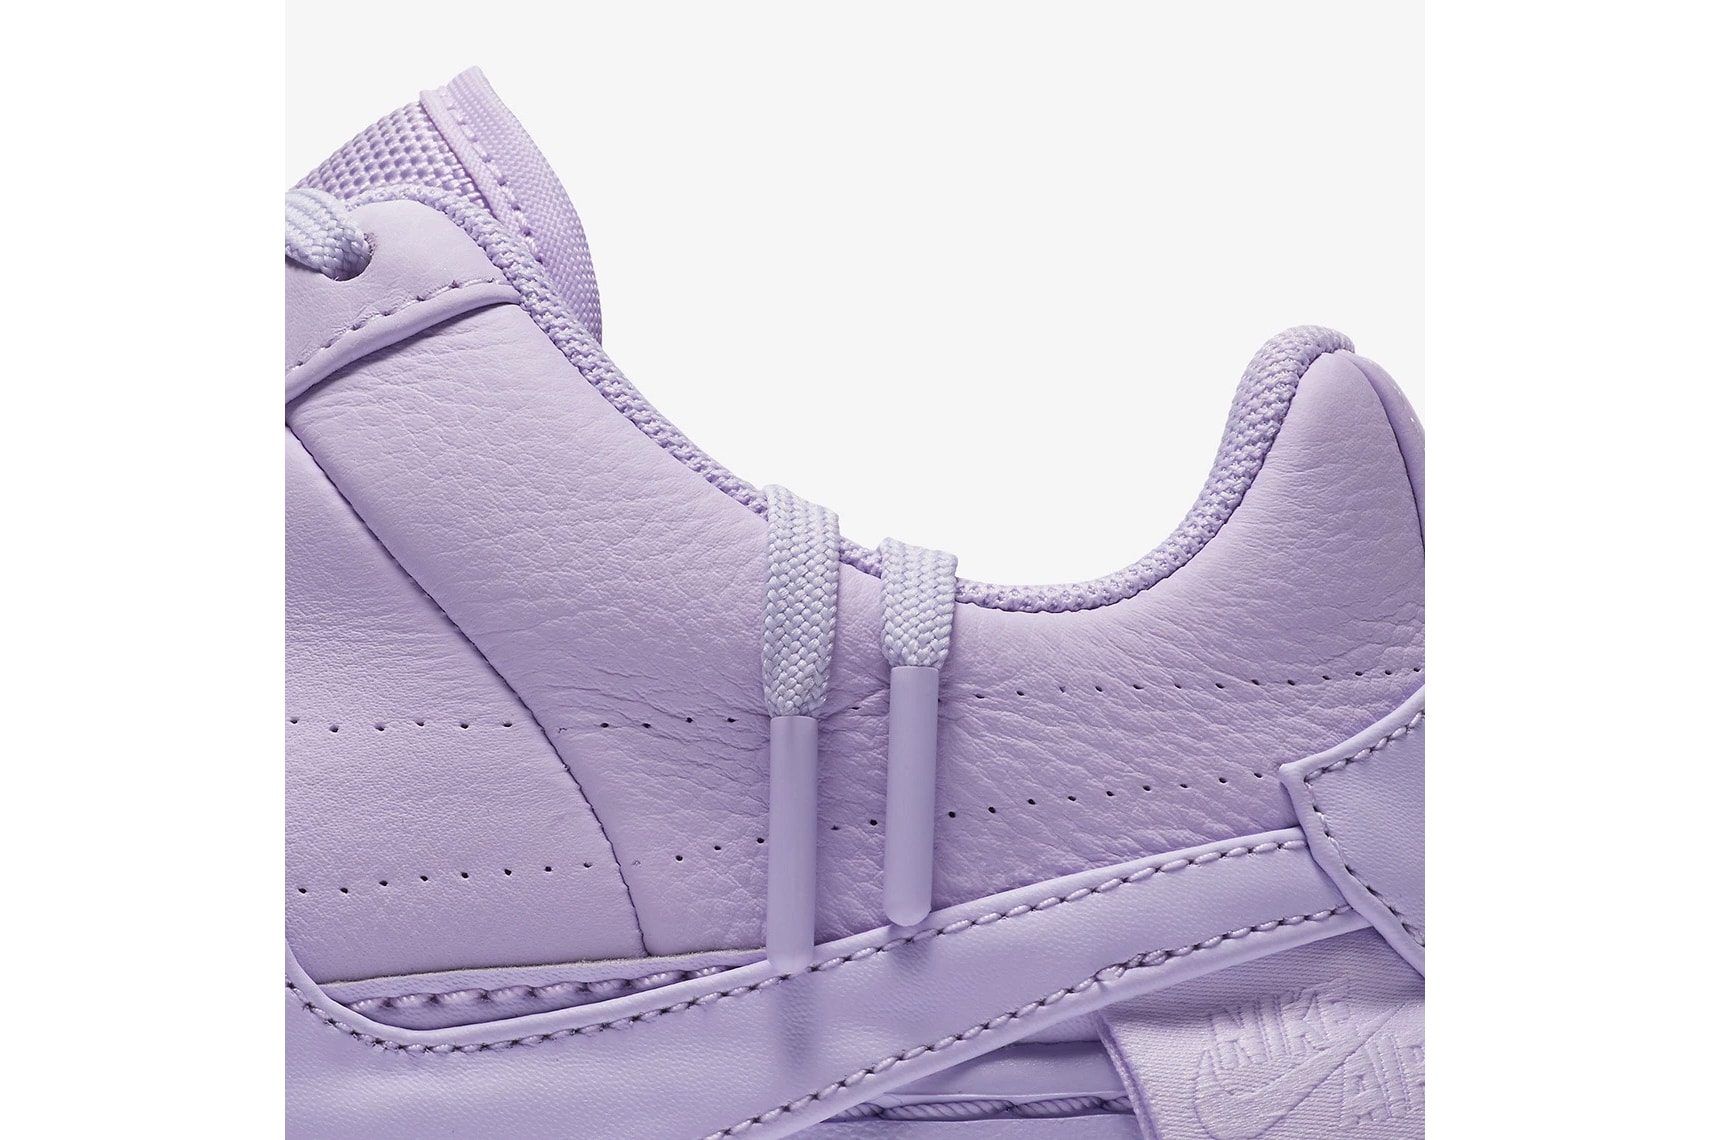 nike air force 1 low jester xx violet mist leather platform purple detail zoom laces